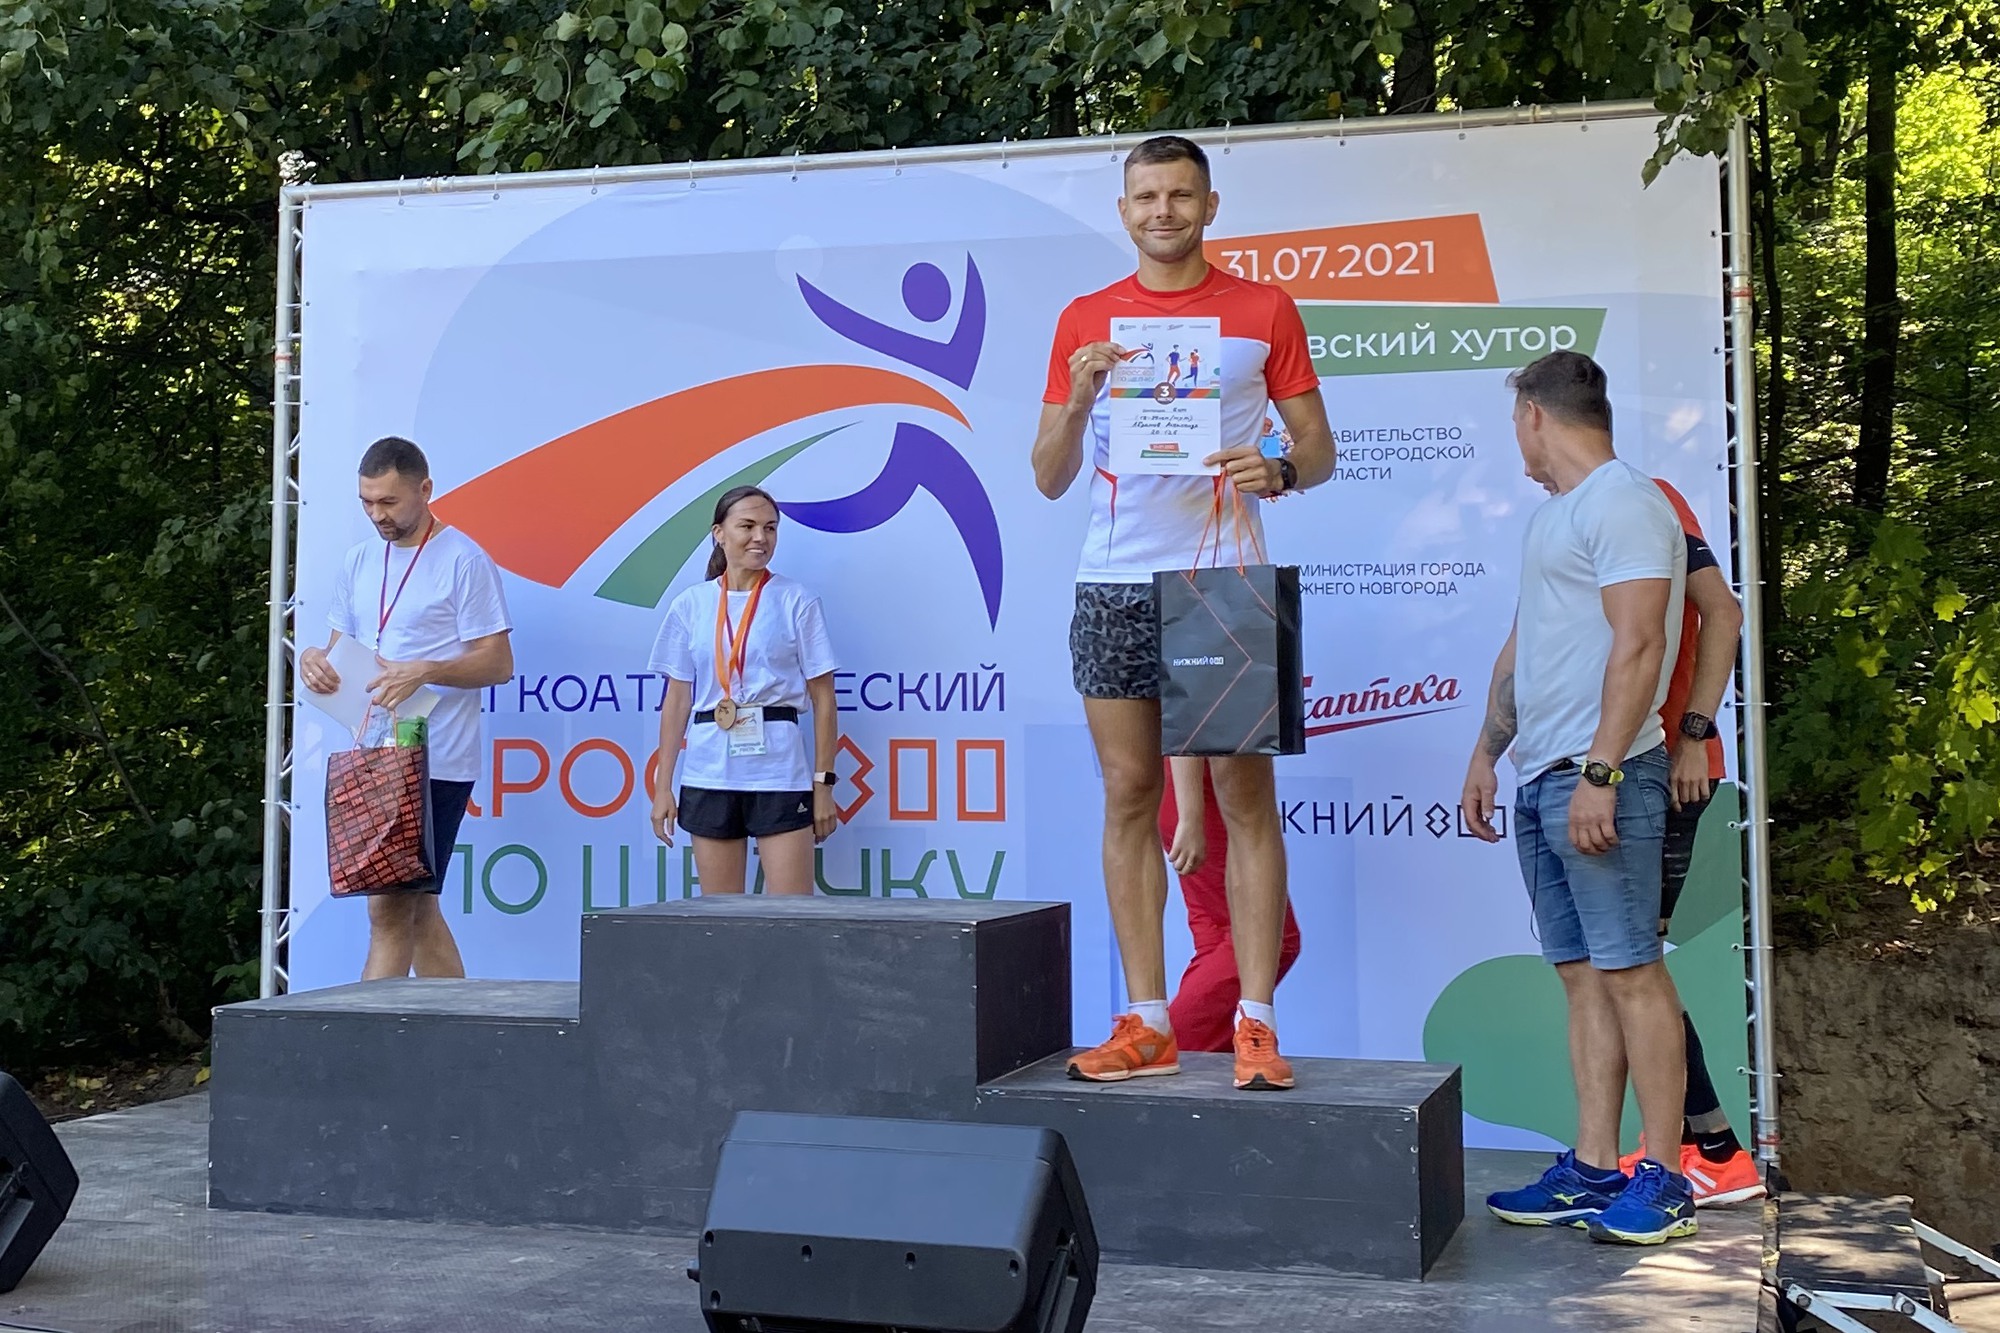 «По Щелчку»: Александр Абрамов финишировал третьим на кроссе в Нижнем Новгороде